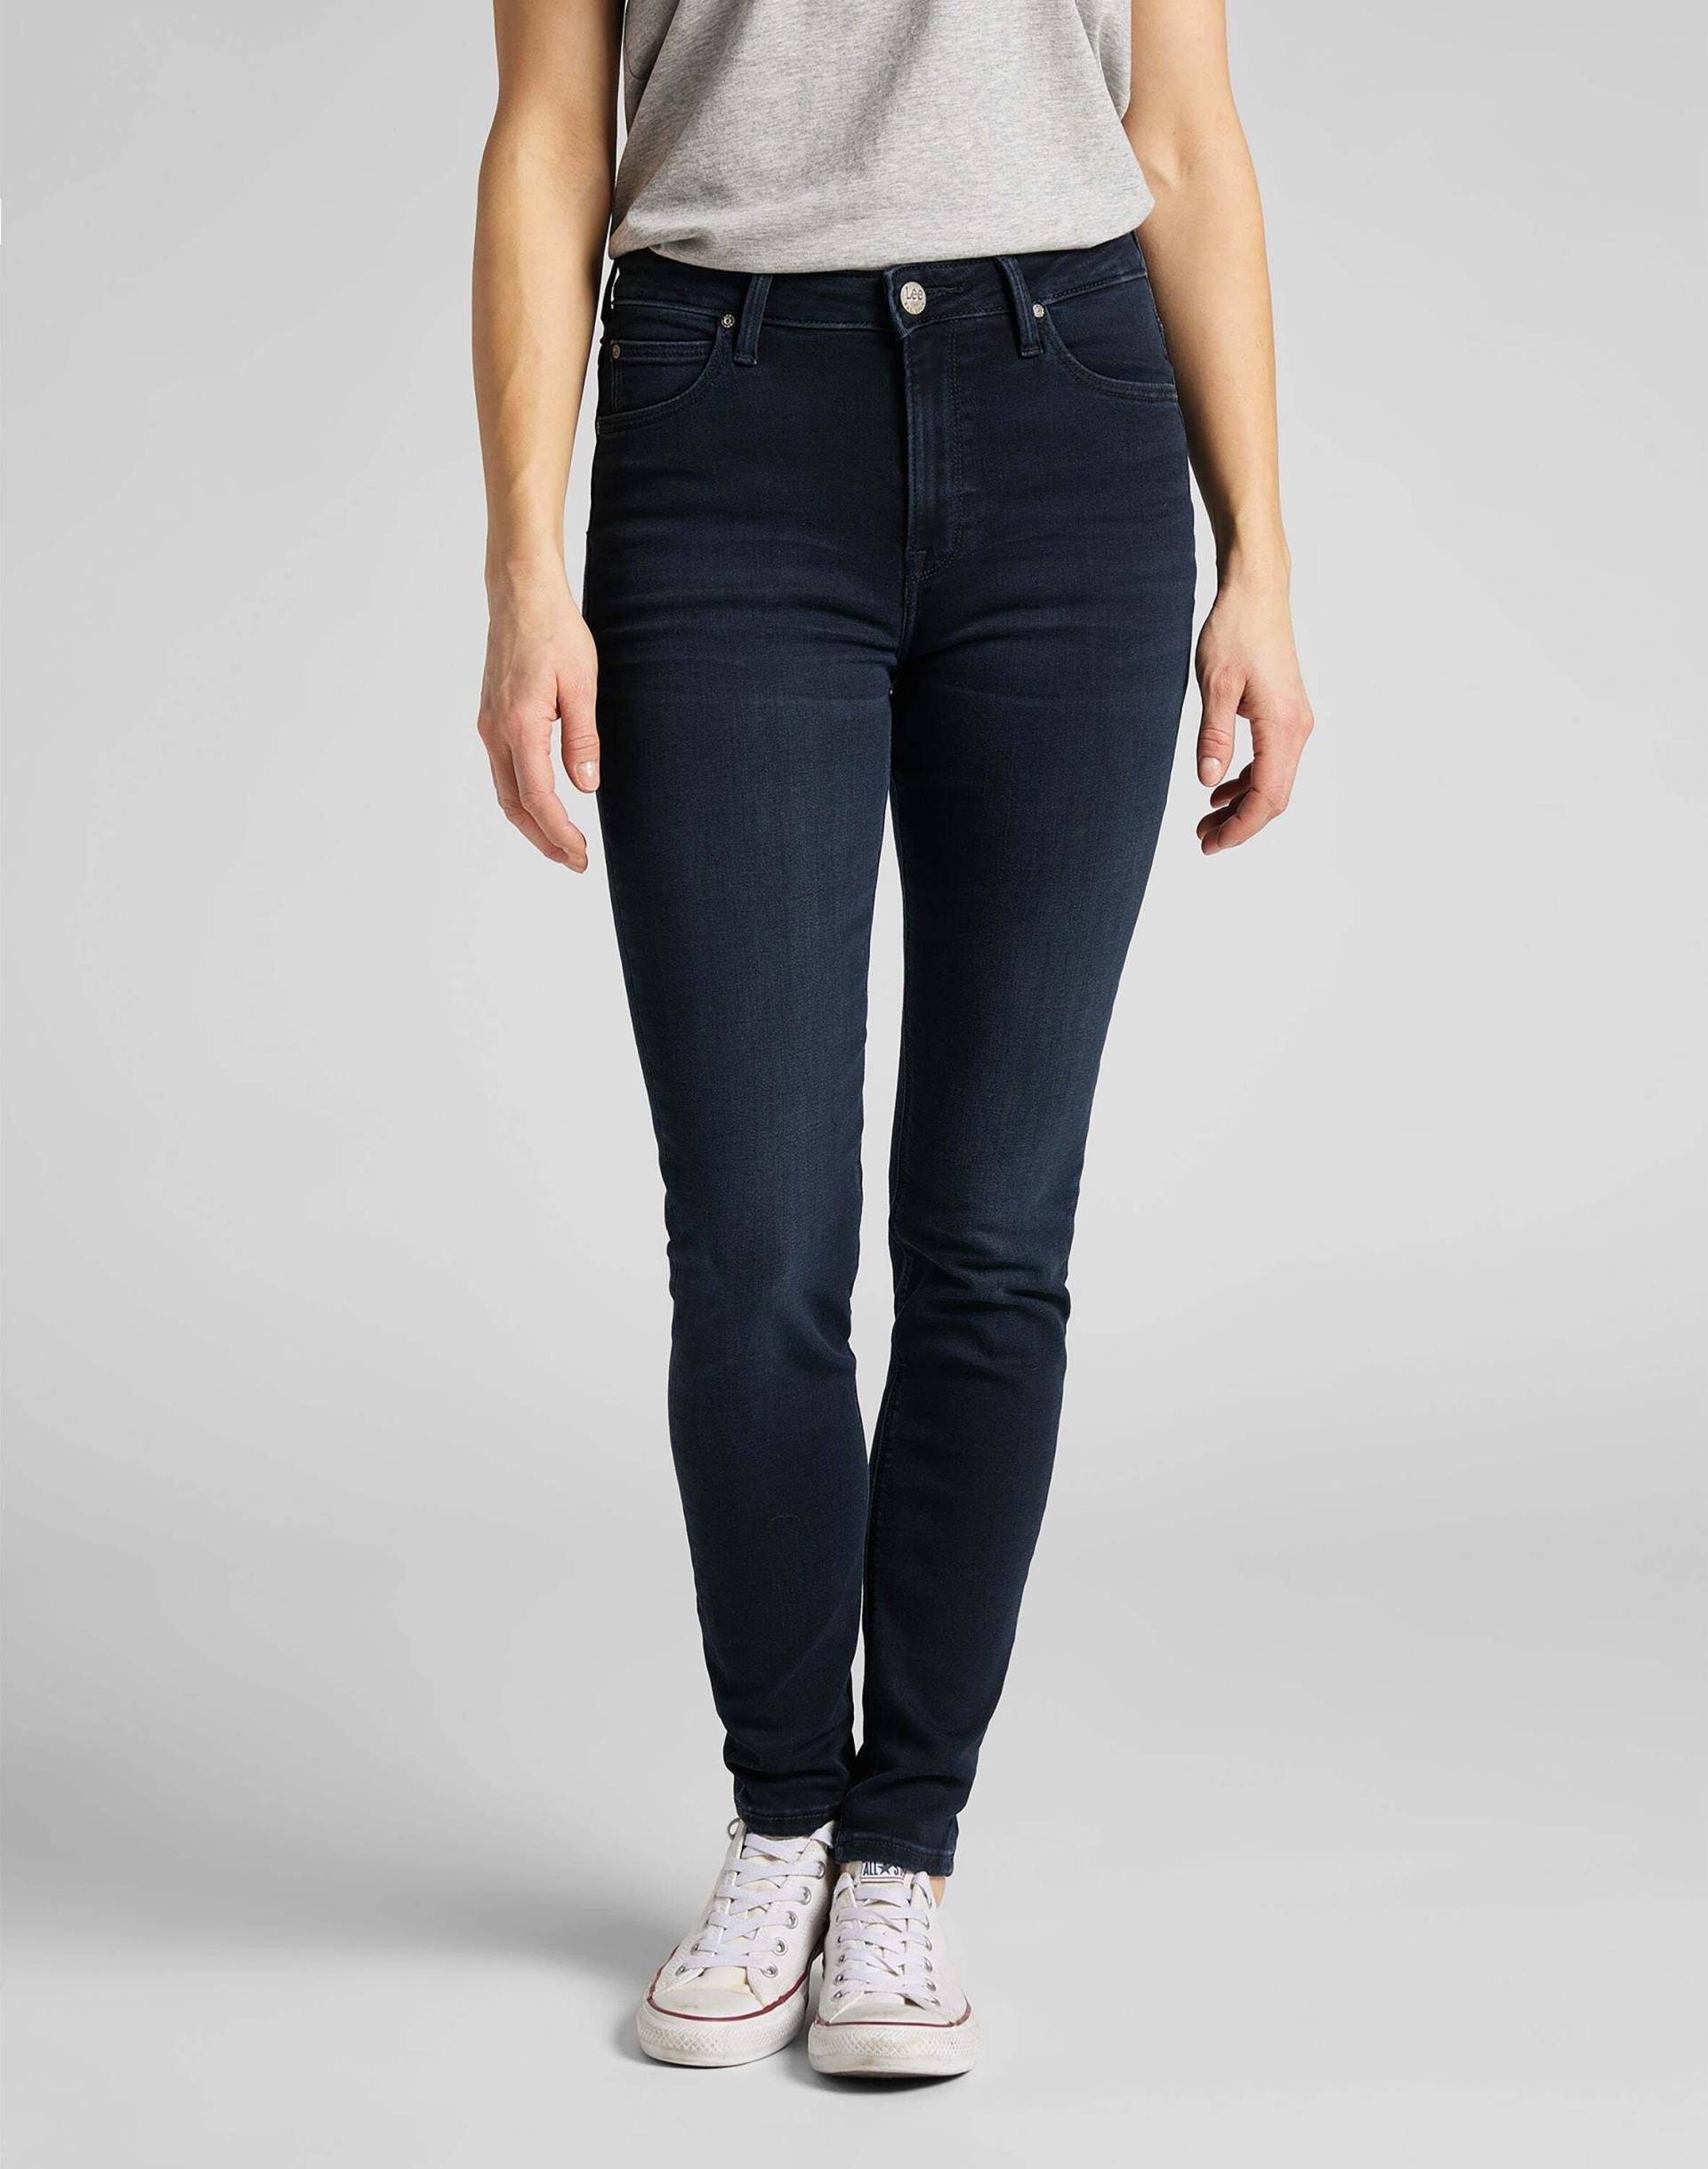 Jeans Skinny Fit Scarlett High Damen Marine L31/W28 von Lee